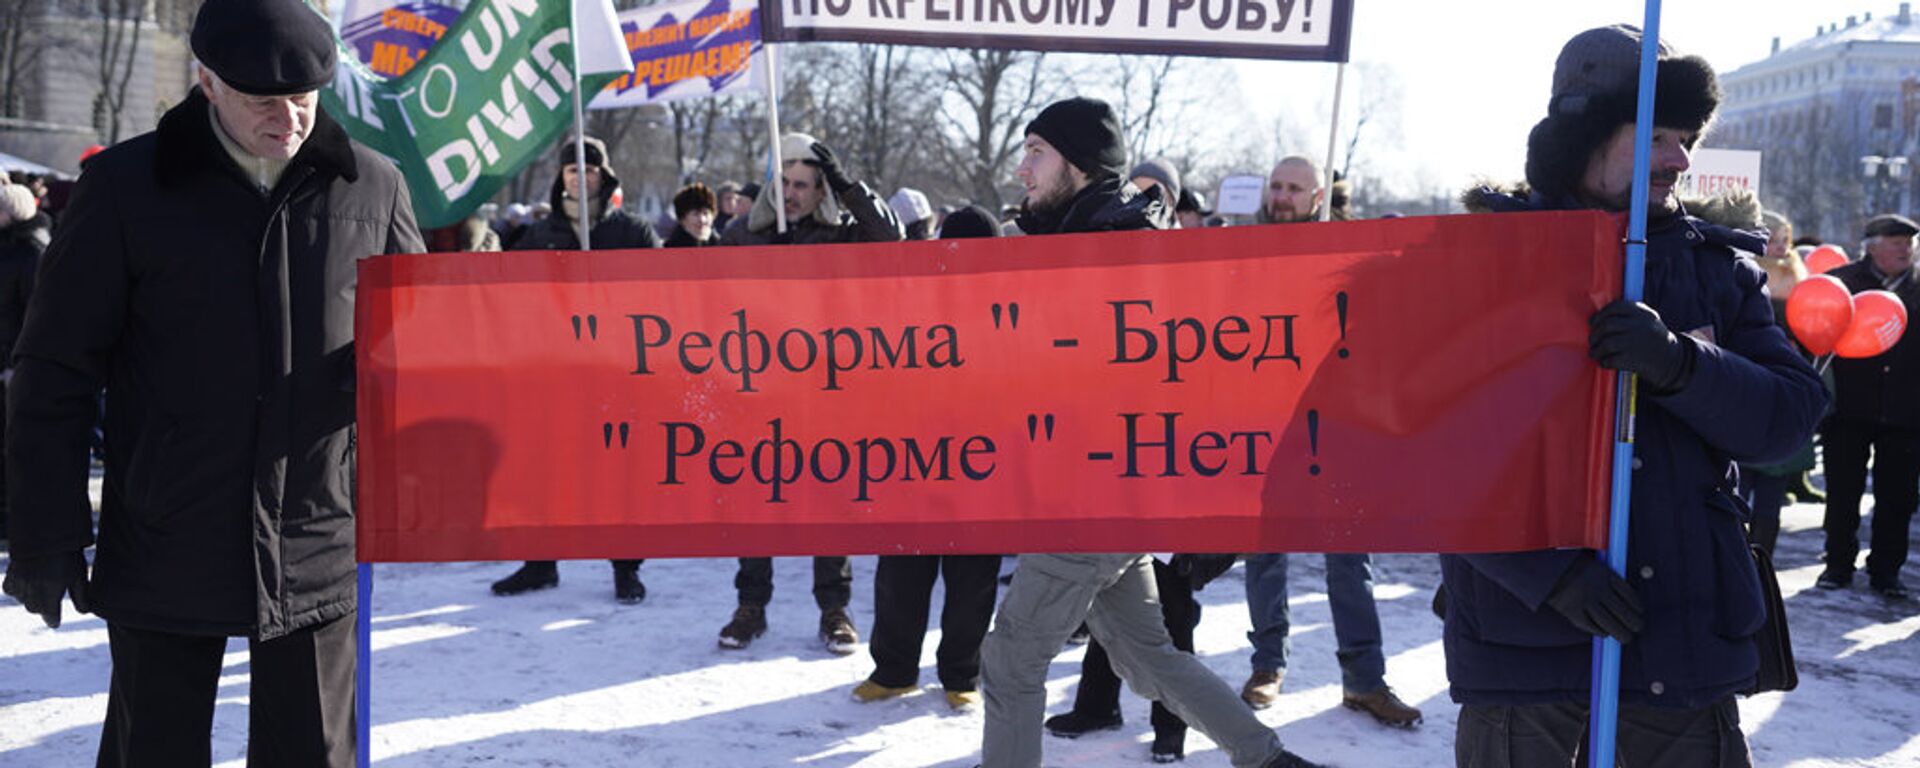 Митинг в защиту образования на русском языке в Латвии. Рига, 24 февраля 2018 г.  - Sputnik Латвия, 1920, 31.01.2021